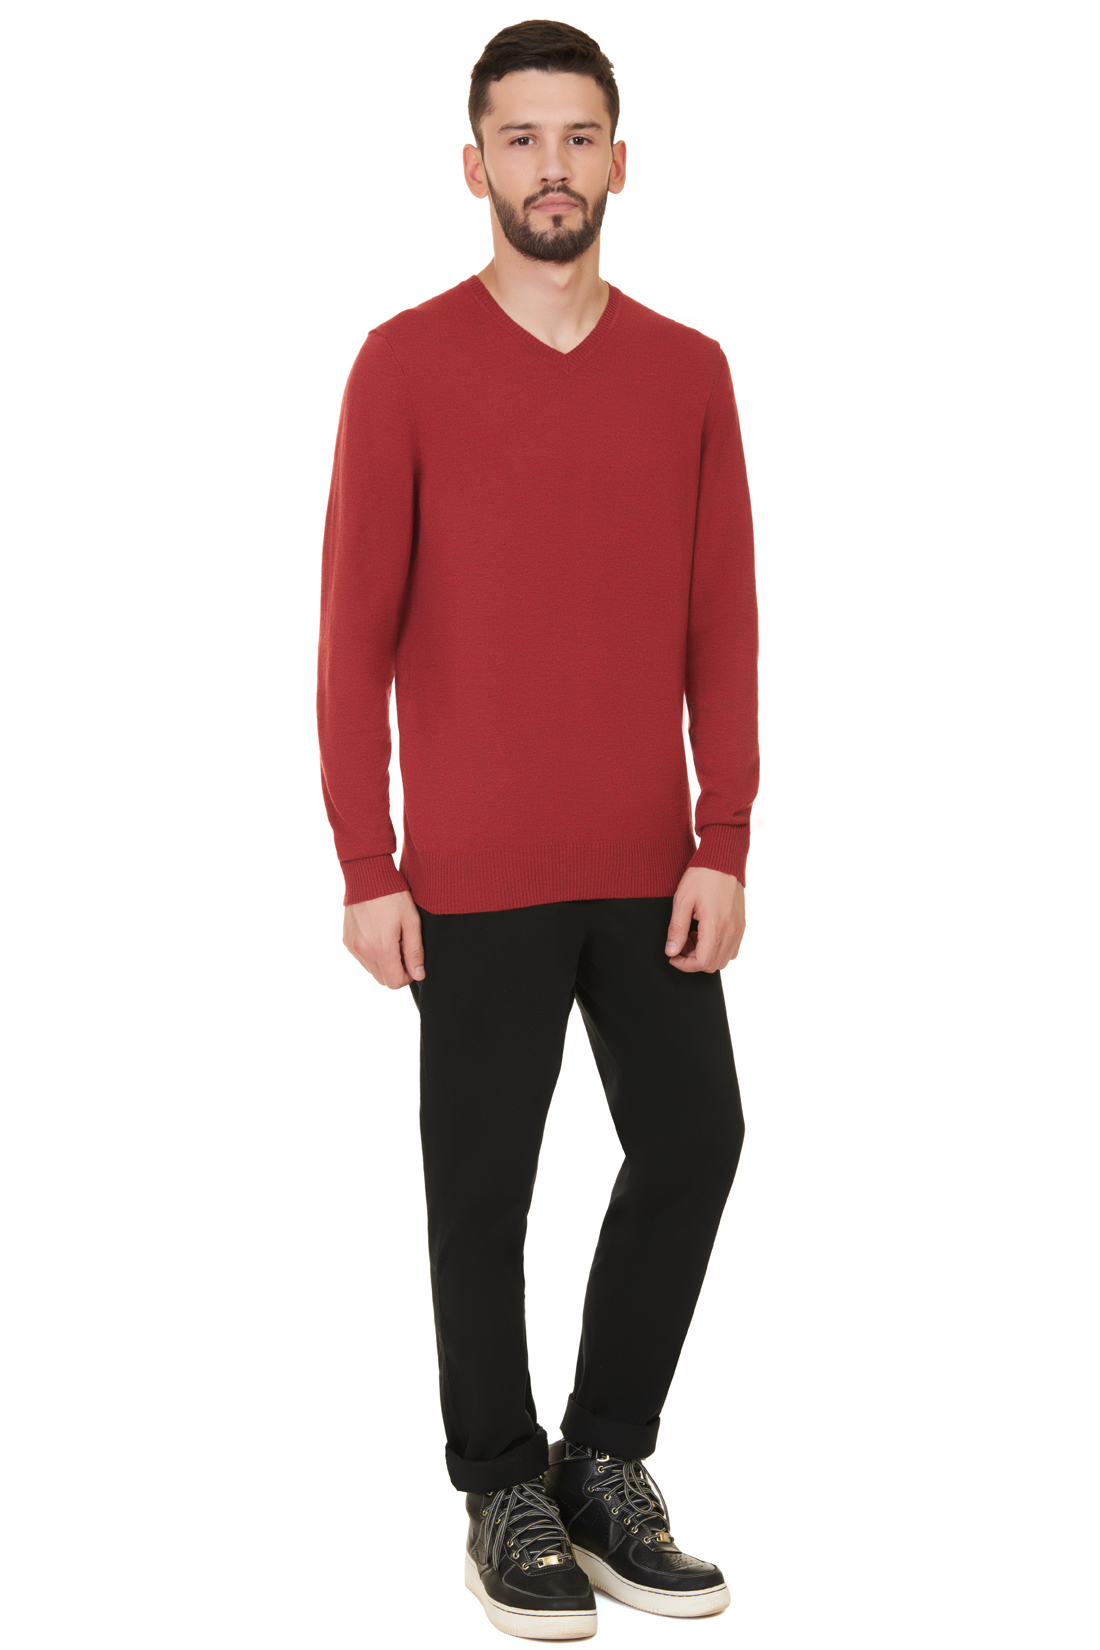 Базовый пуловер (арт. baon B637703), размер XXL, цвет red melange#красный Базовый пуловер (арт. baon B637703) - фото 5